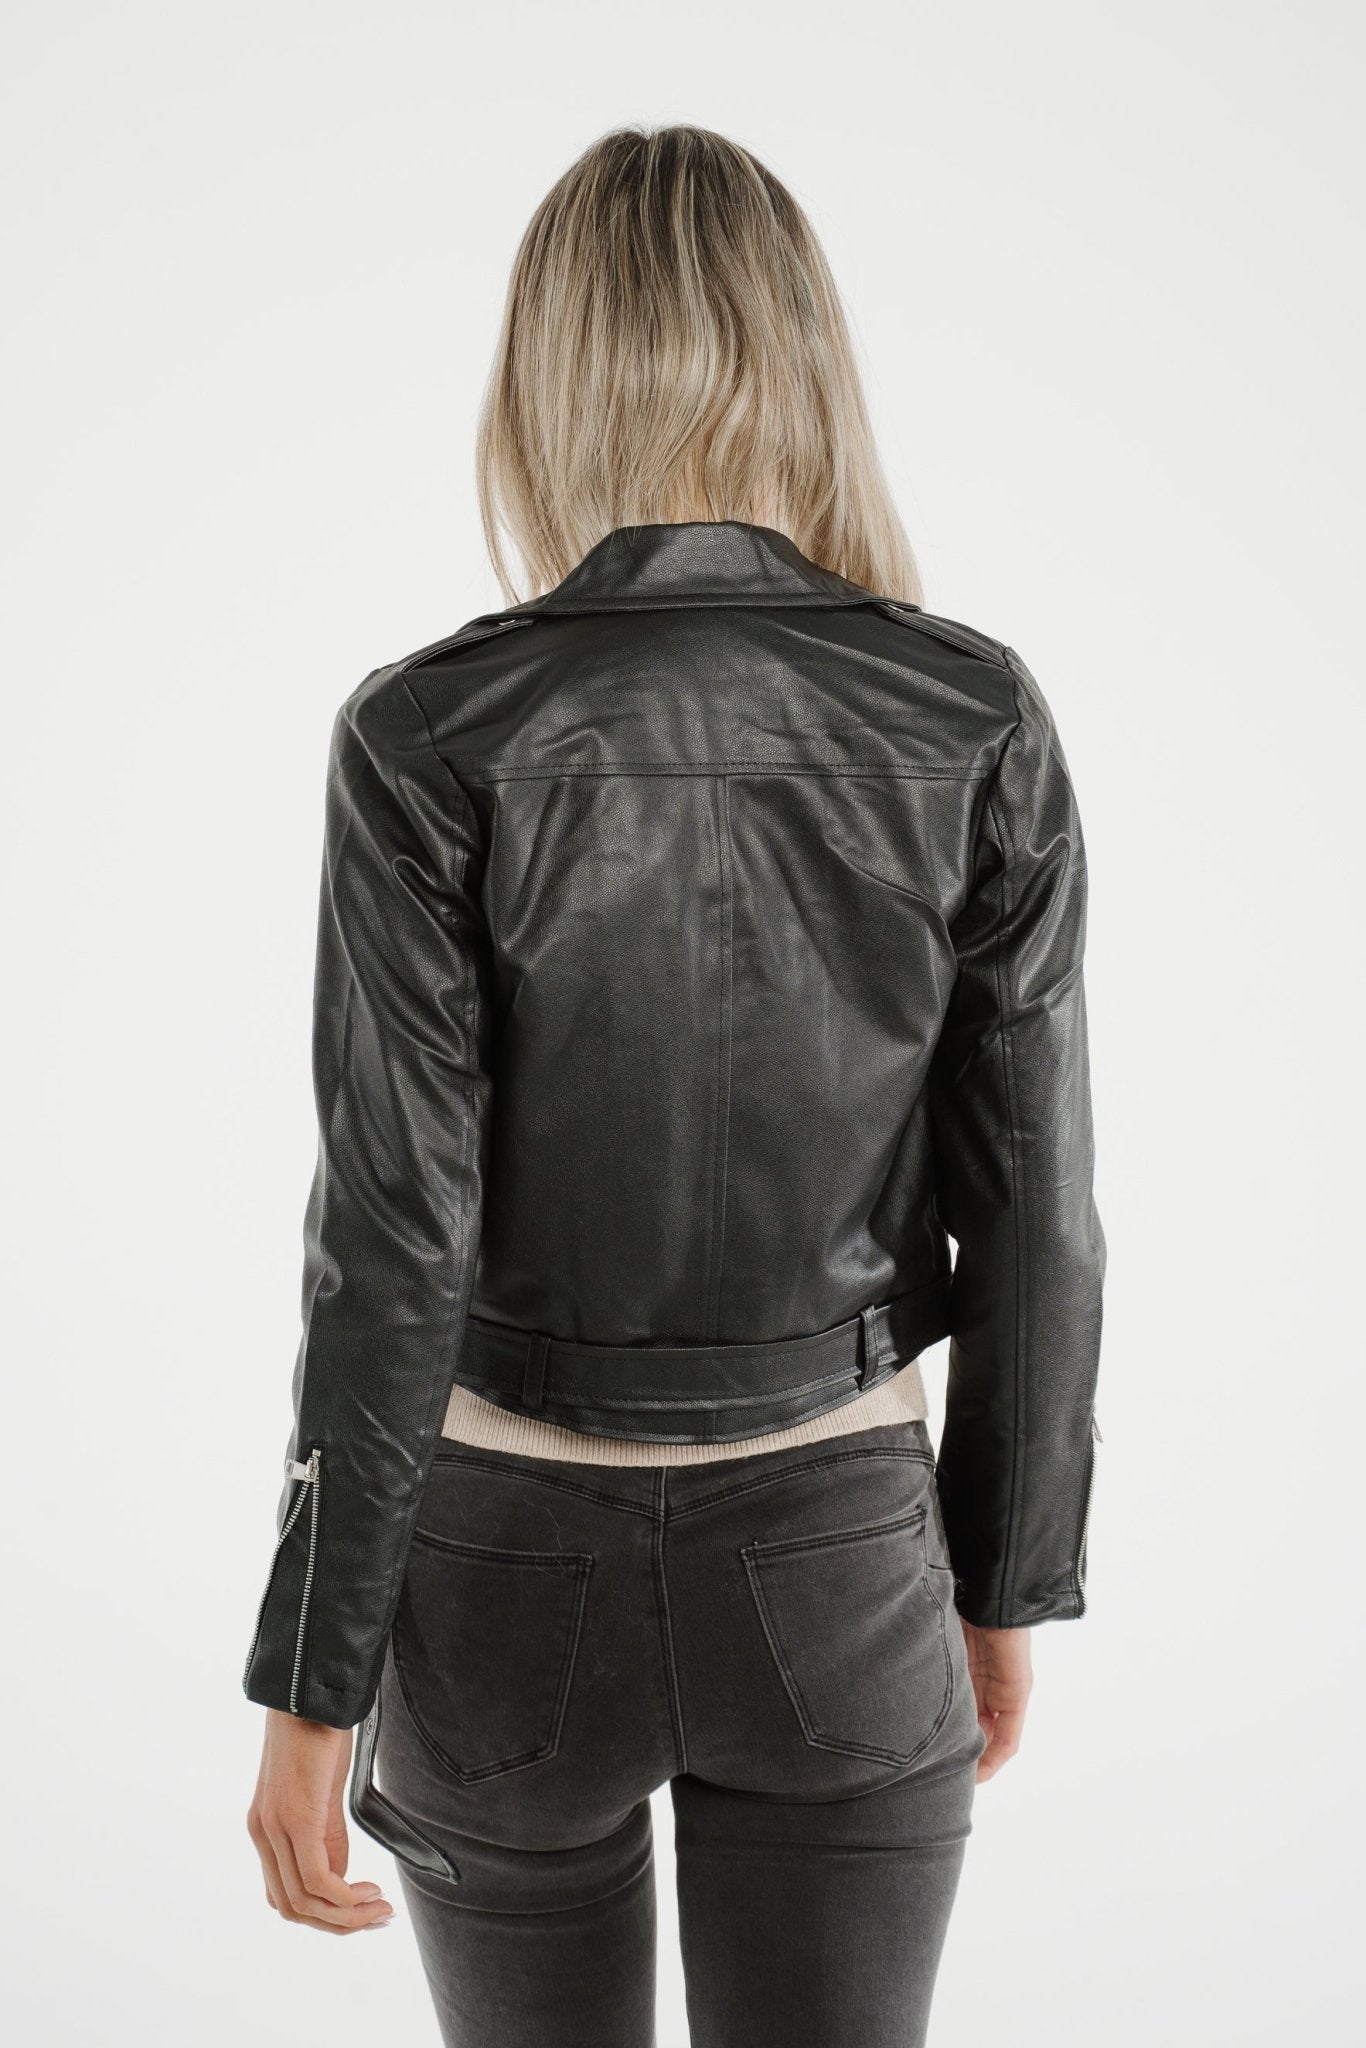 Tara Faux Leather Jacket In Black - The Walk in Wardrobe